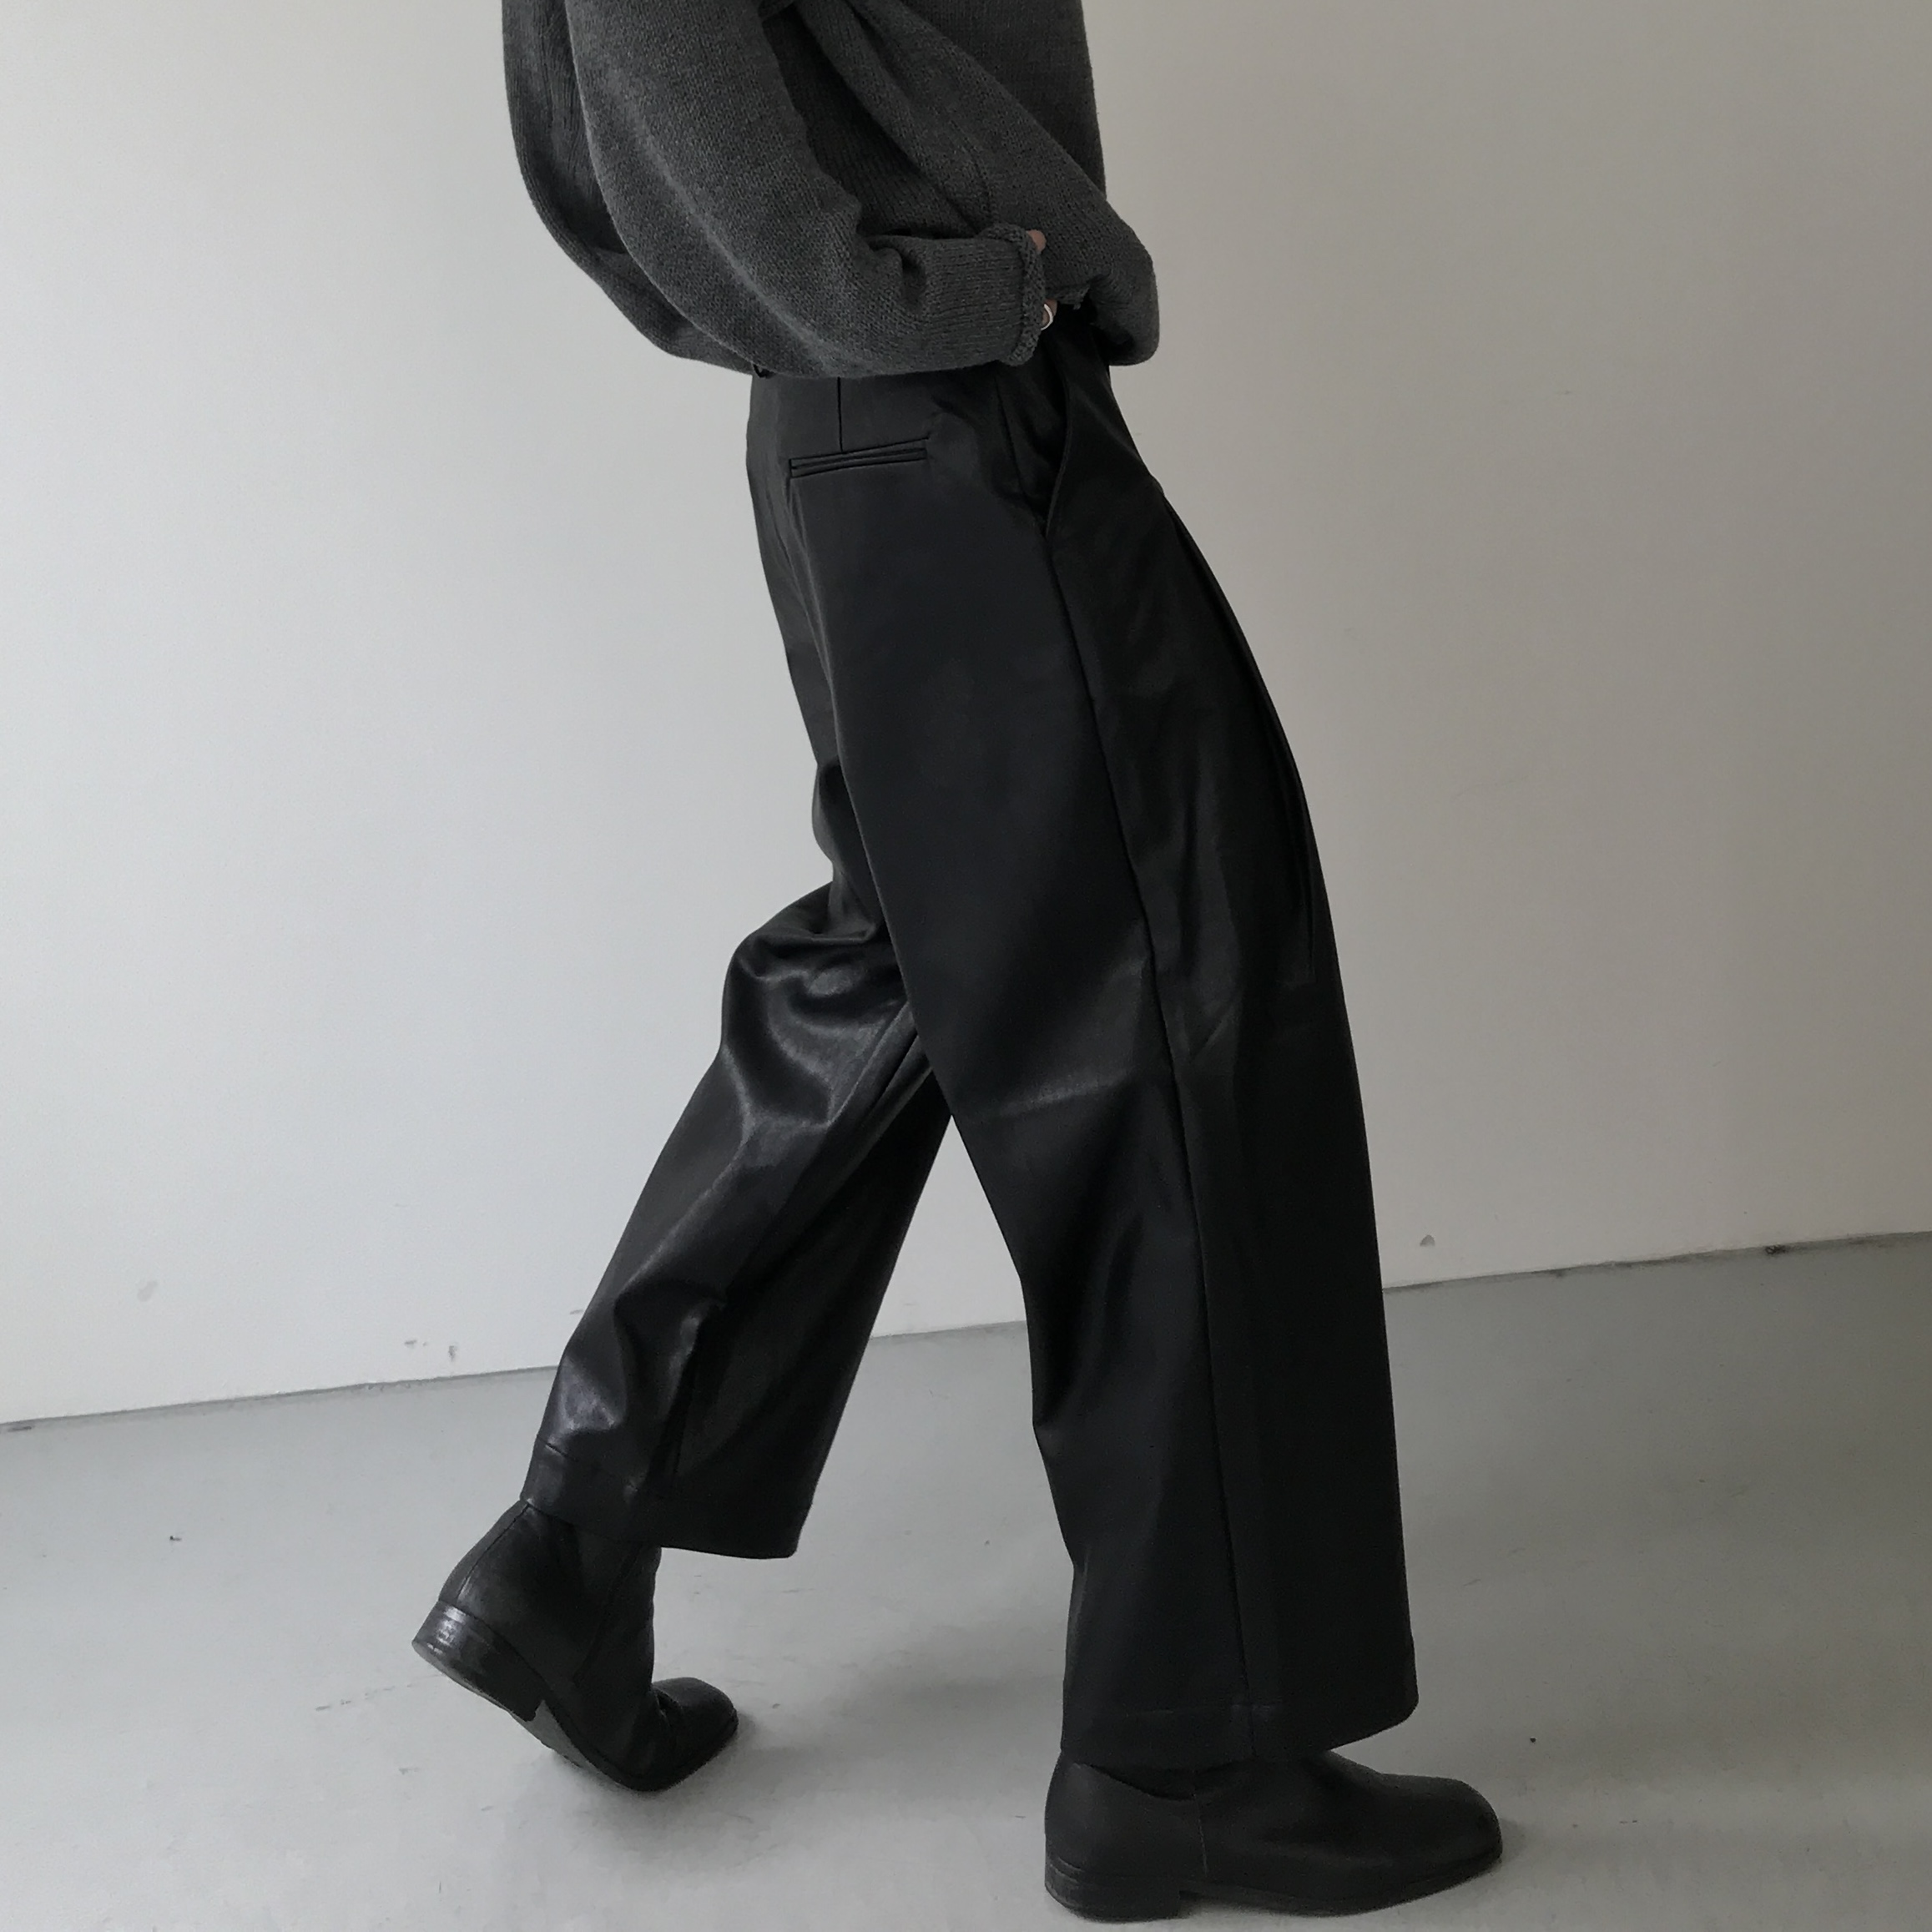 COLN皮革是对秋冬的敬意 pu高腰西裤不管抗风力还是时髦力都是max